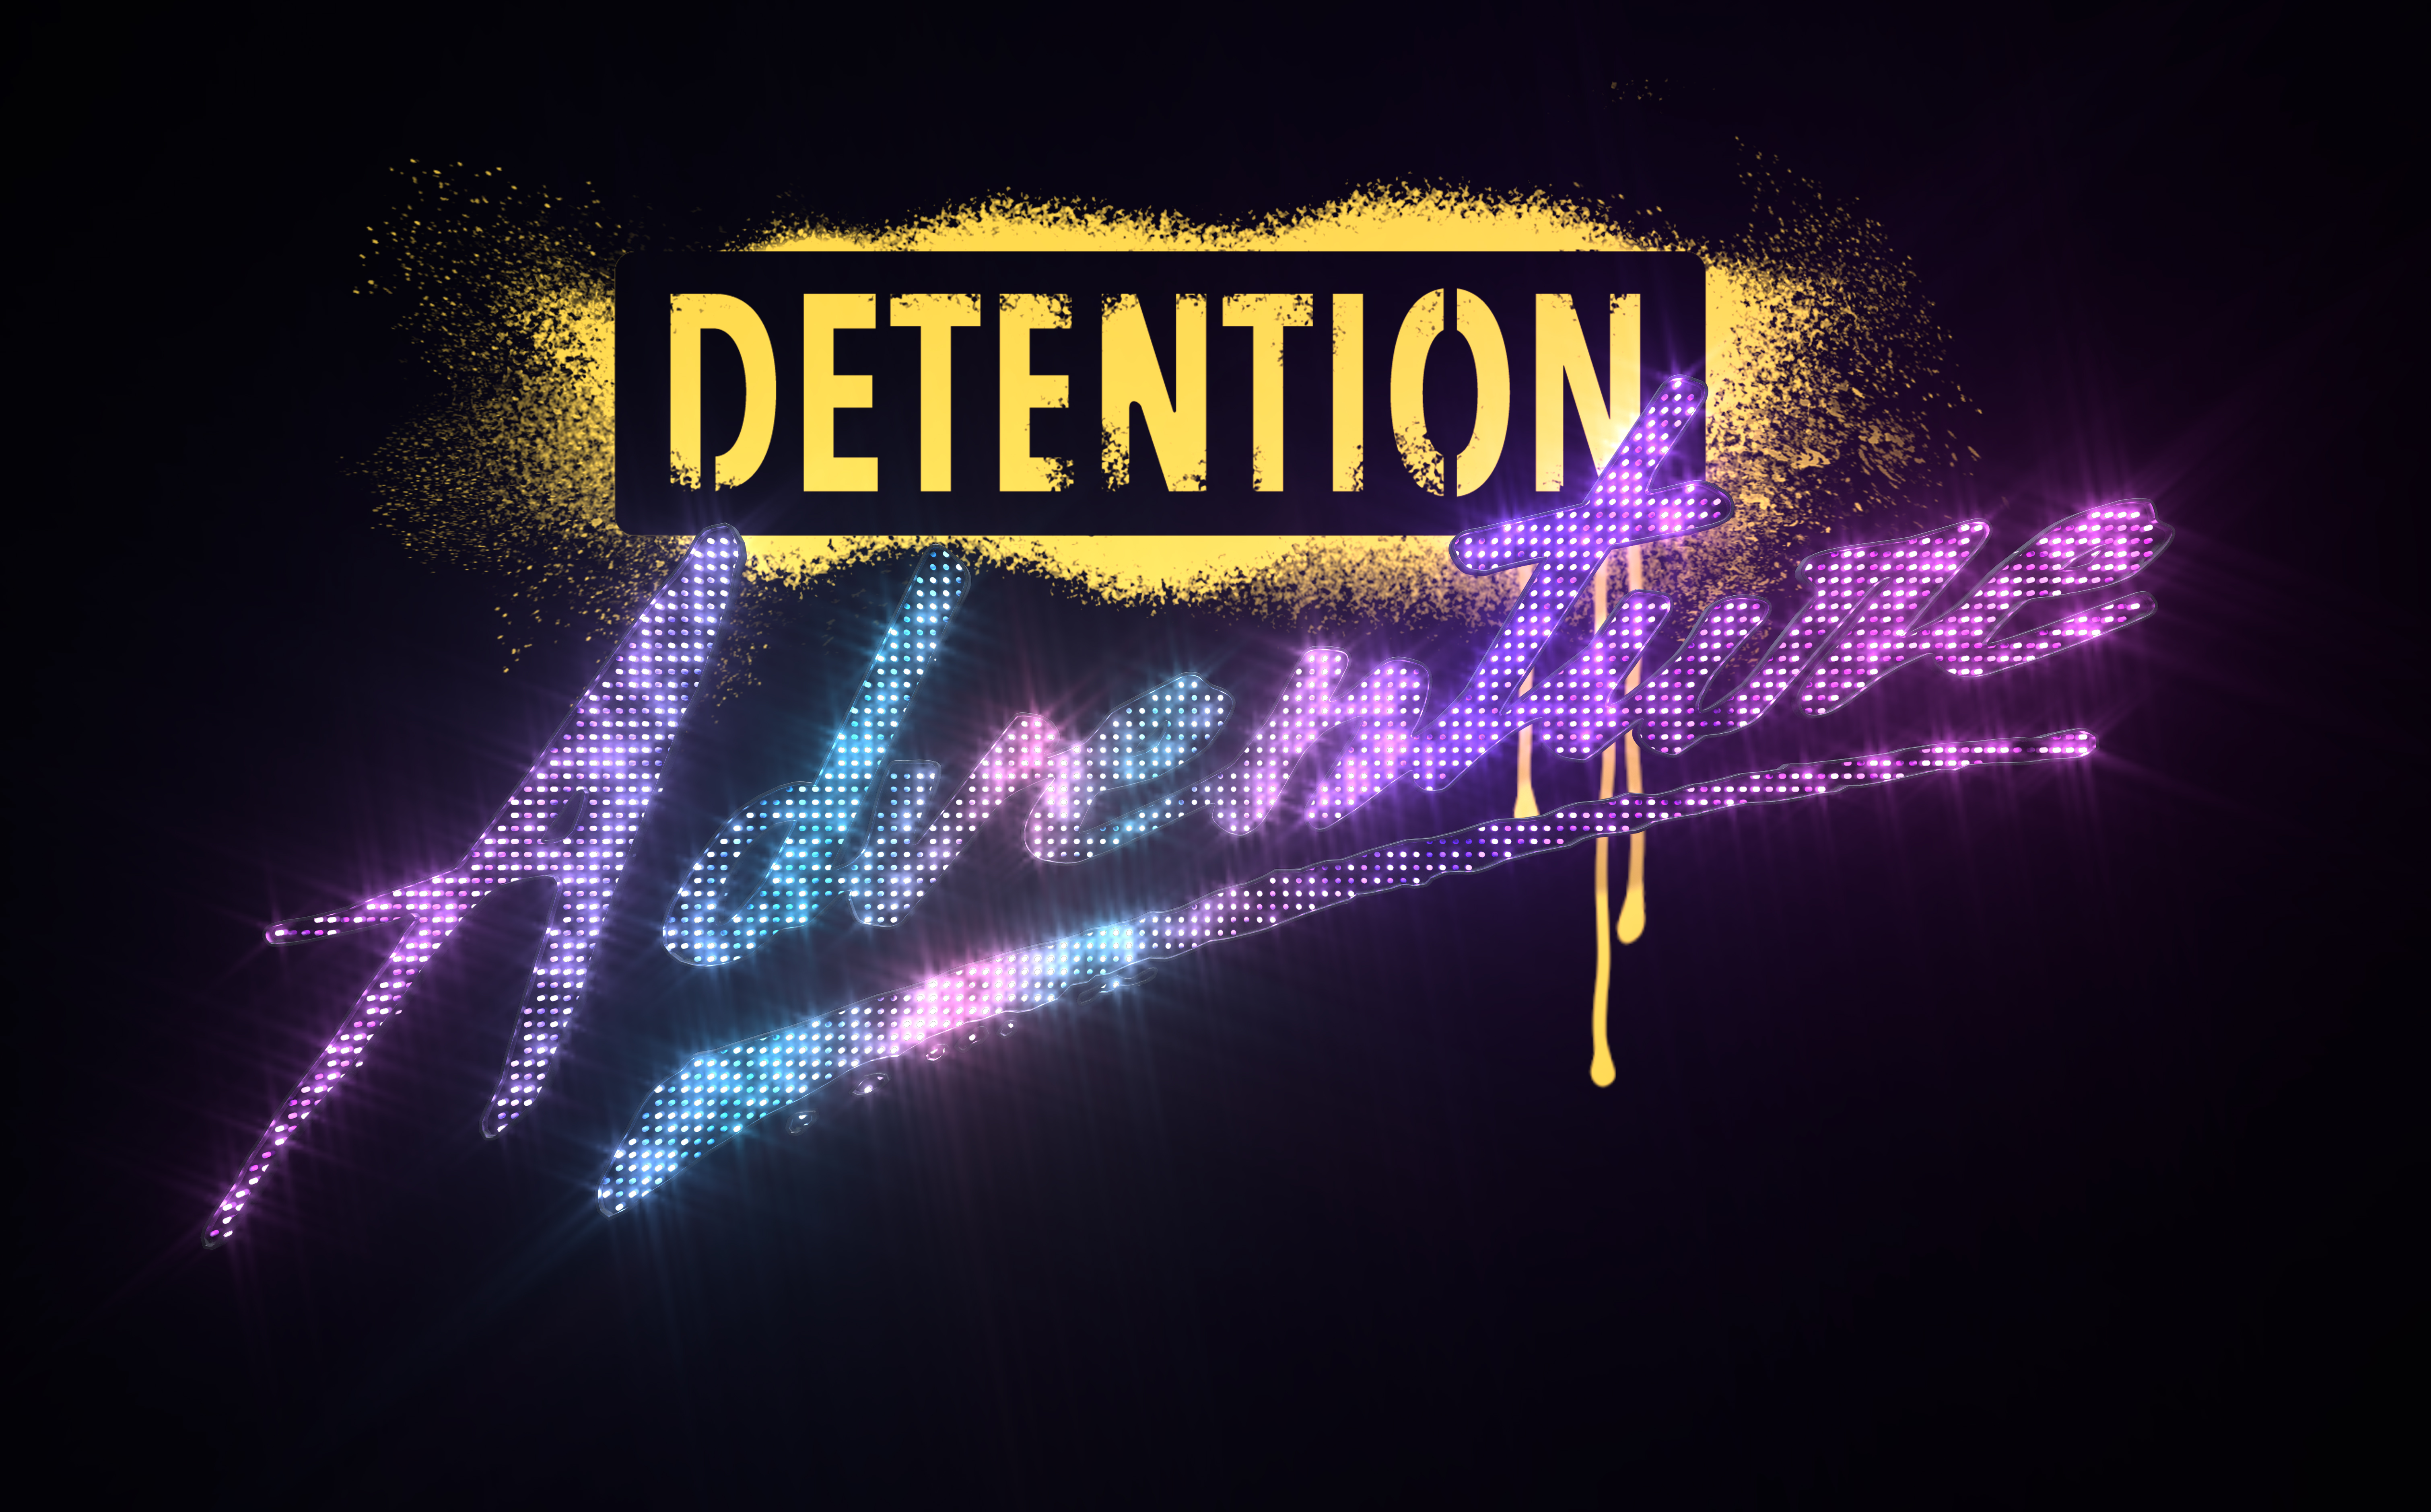 Detention Adventure, Season 3